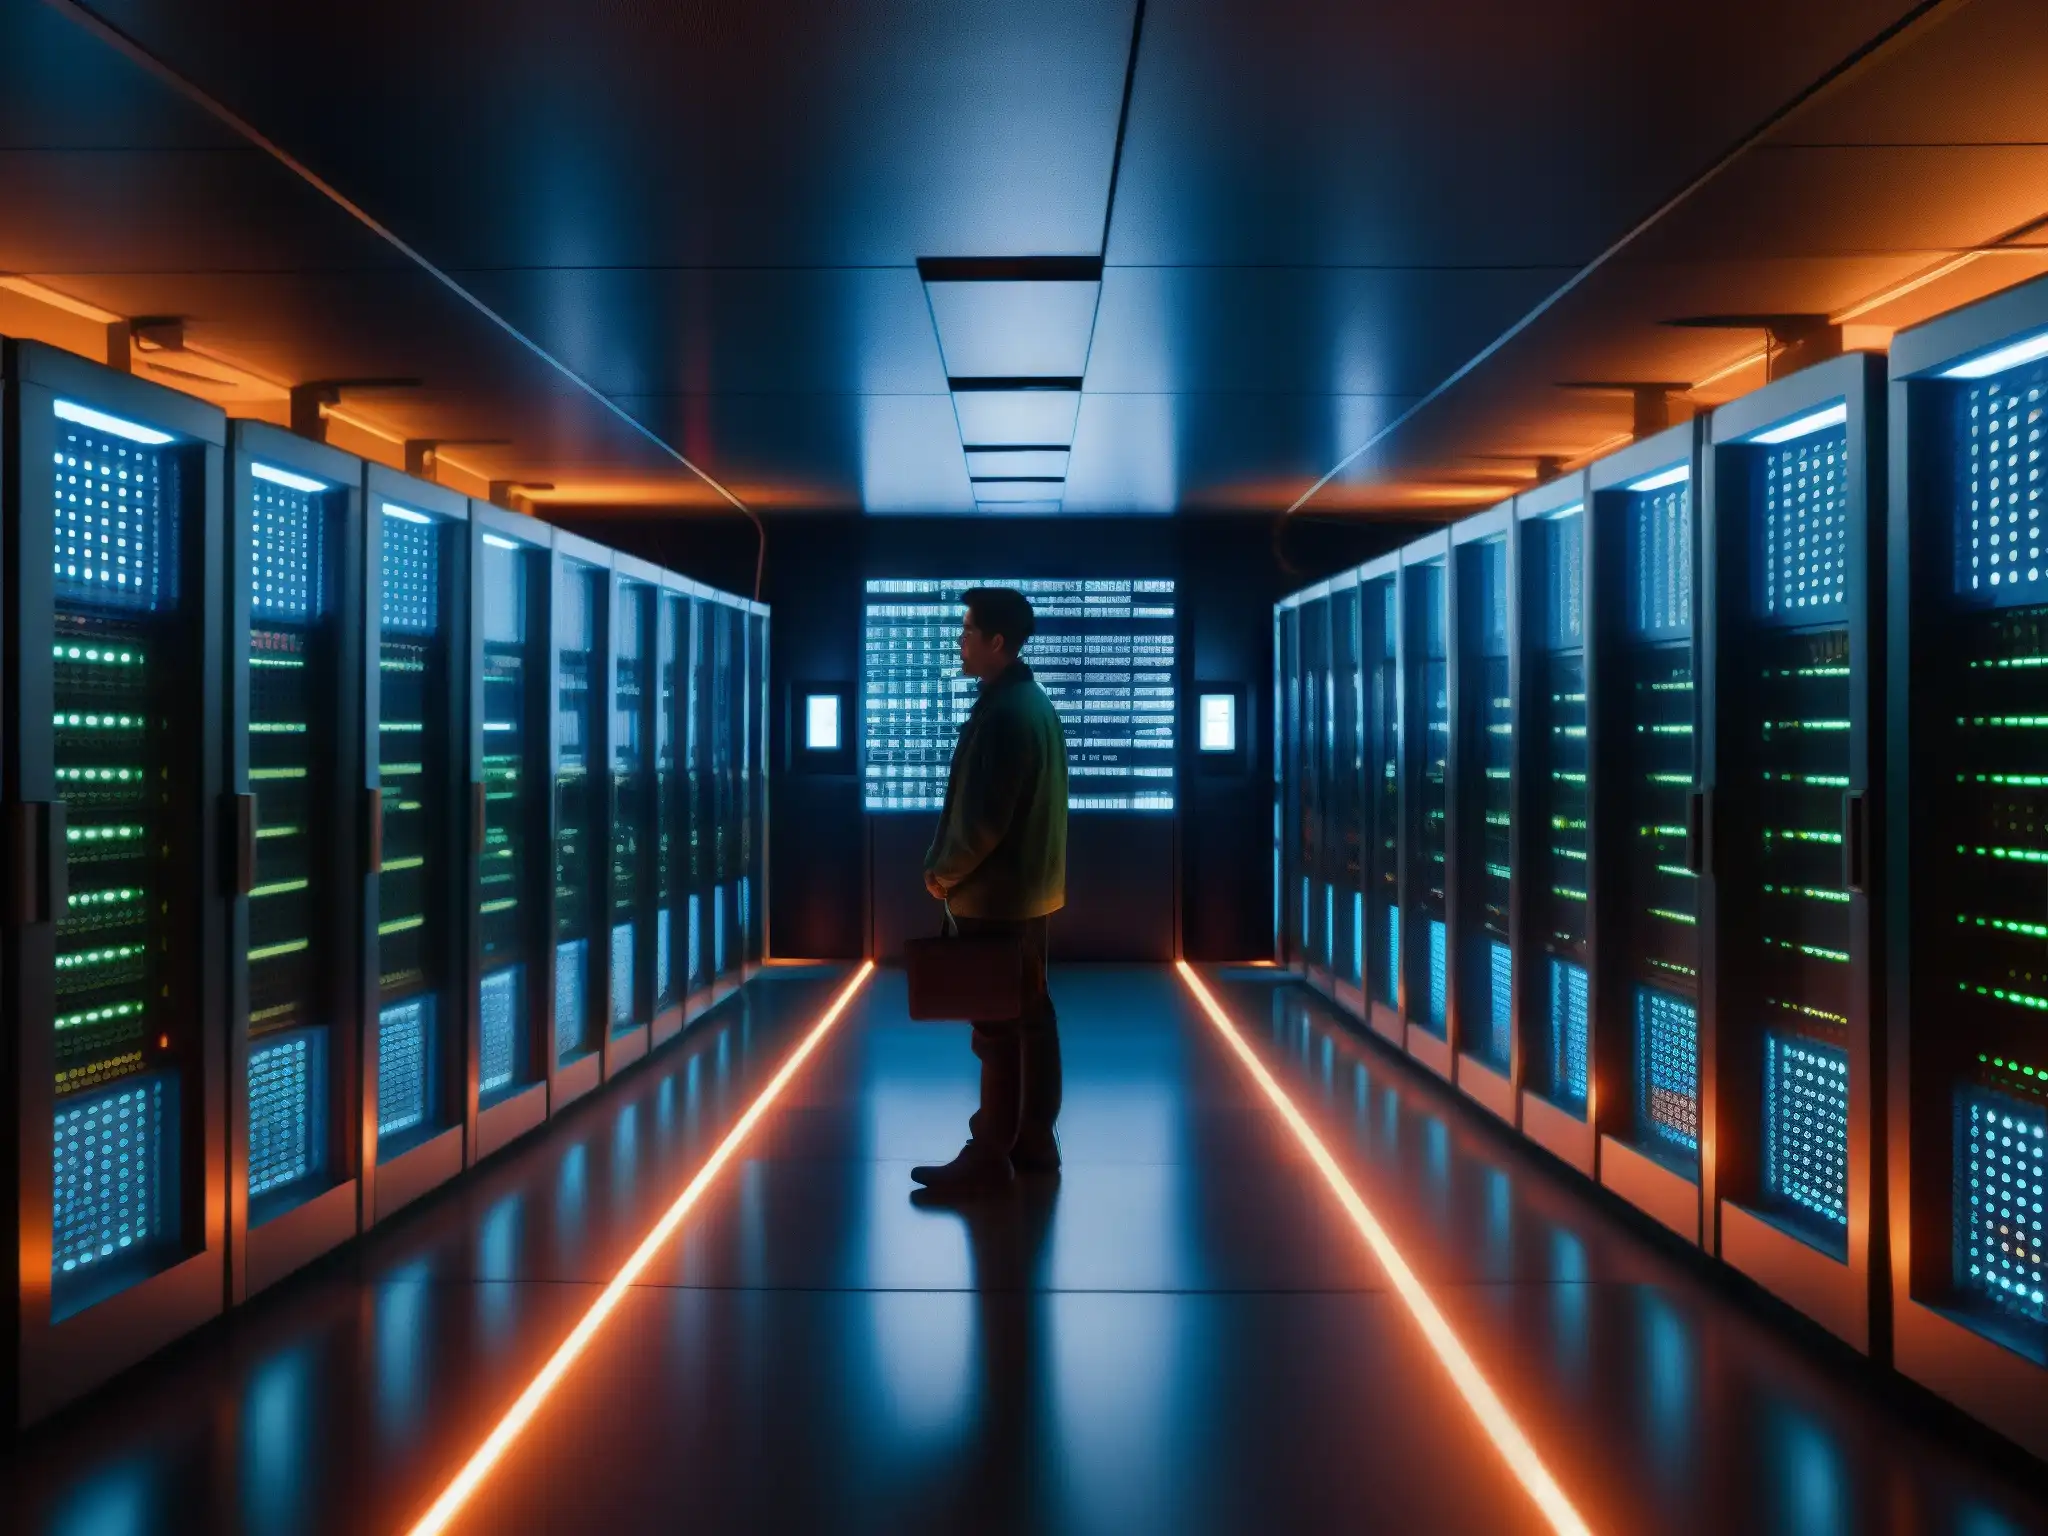 En un búnker subterráneo iluminado tenue, figuras sombrías trabajan en computadoras mientras cables conectan servidores